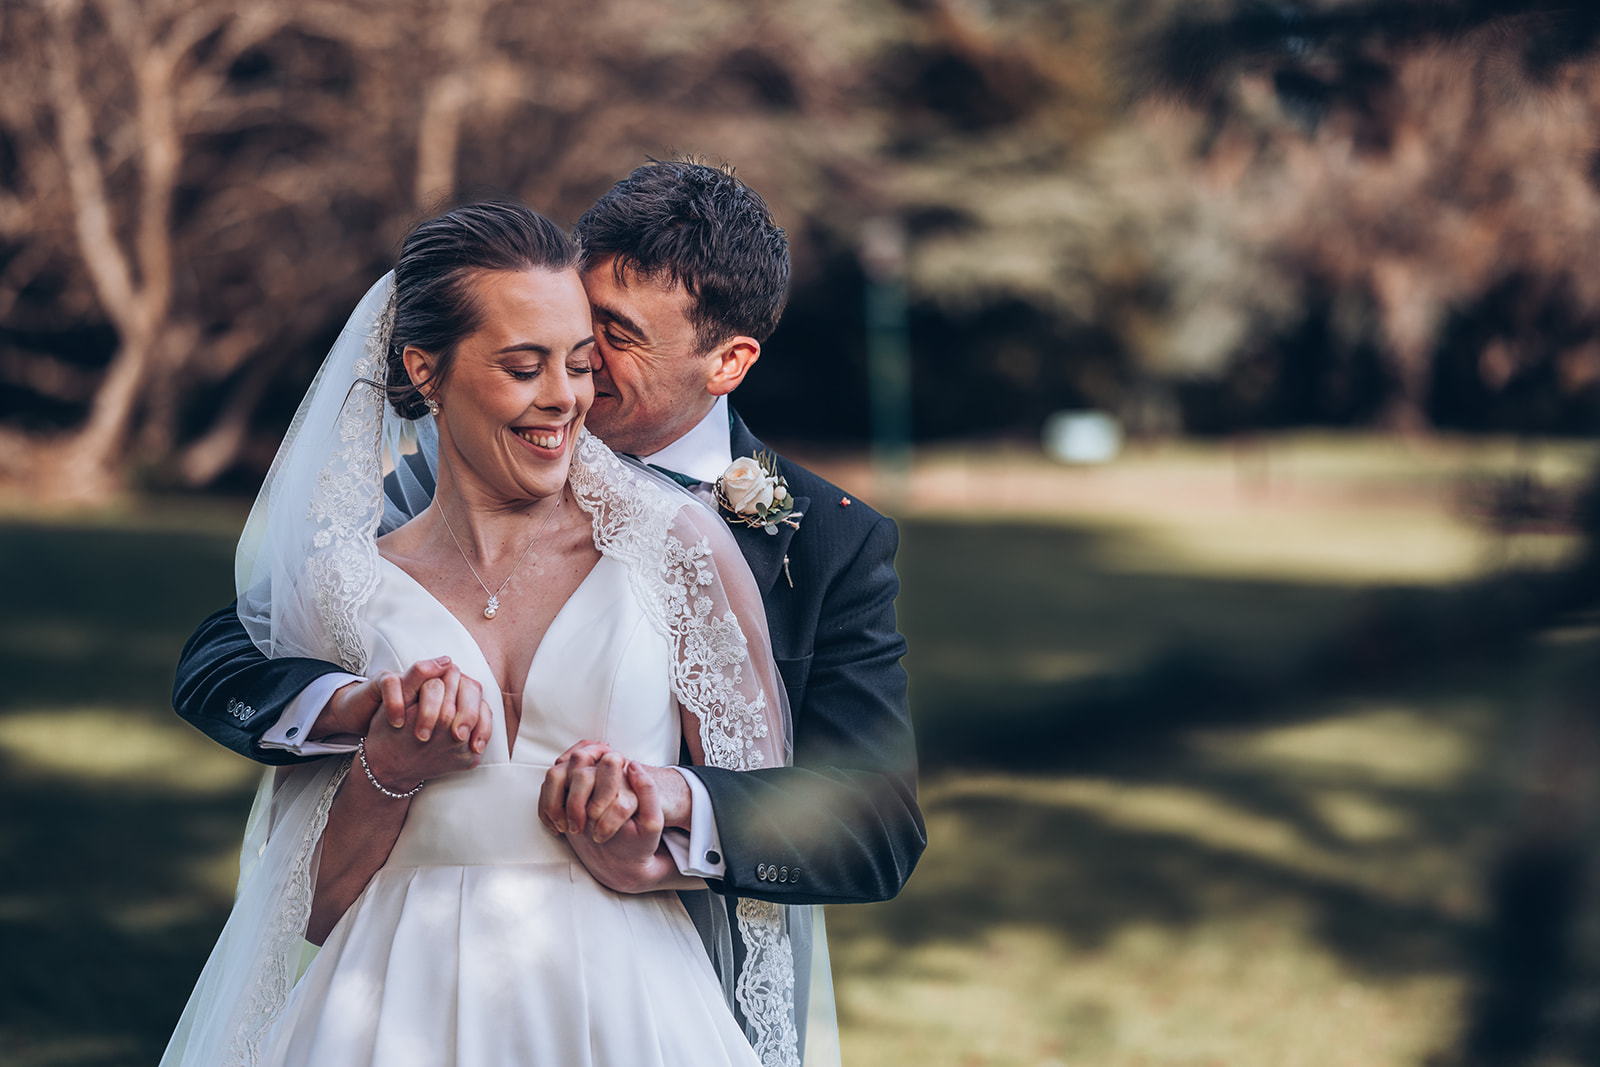 A bride and groom at Hanbury Manor